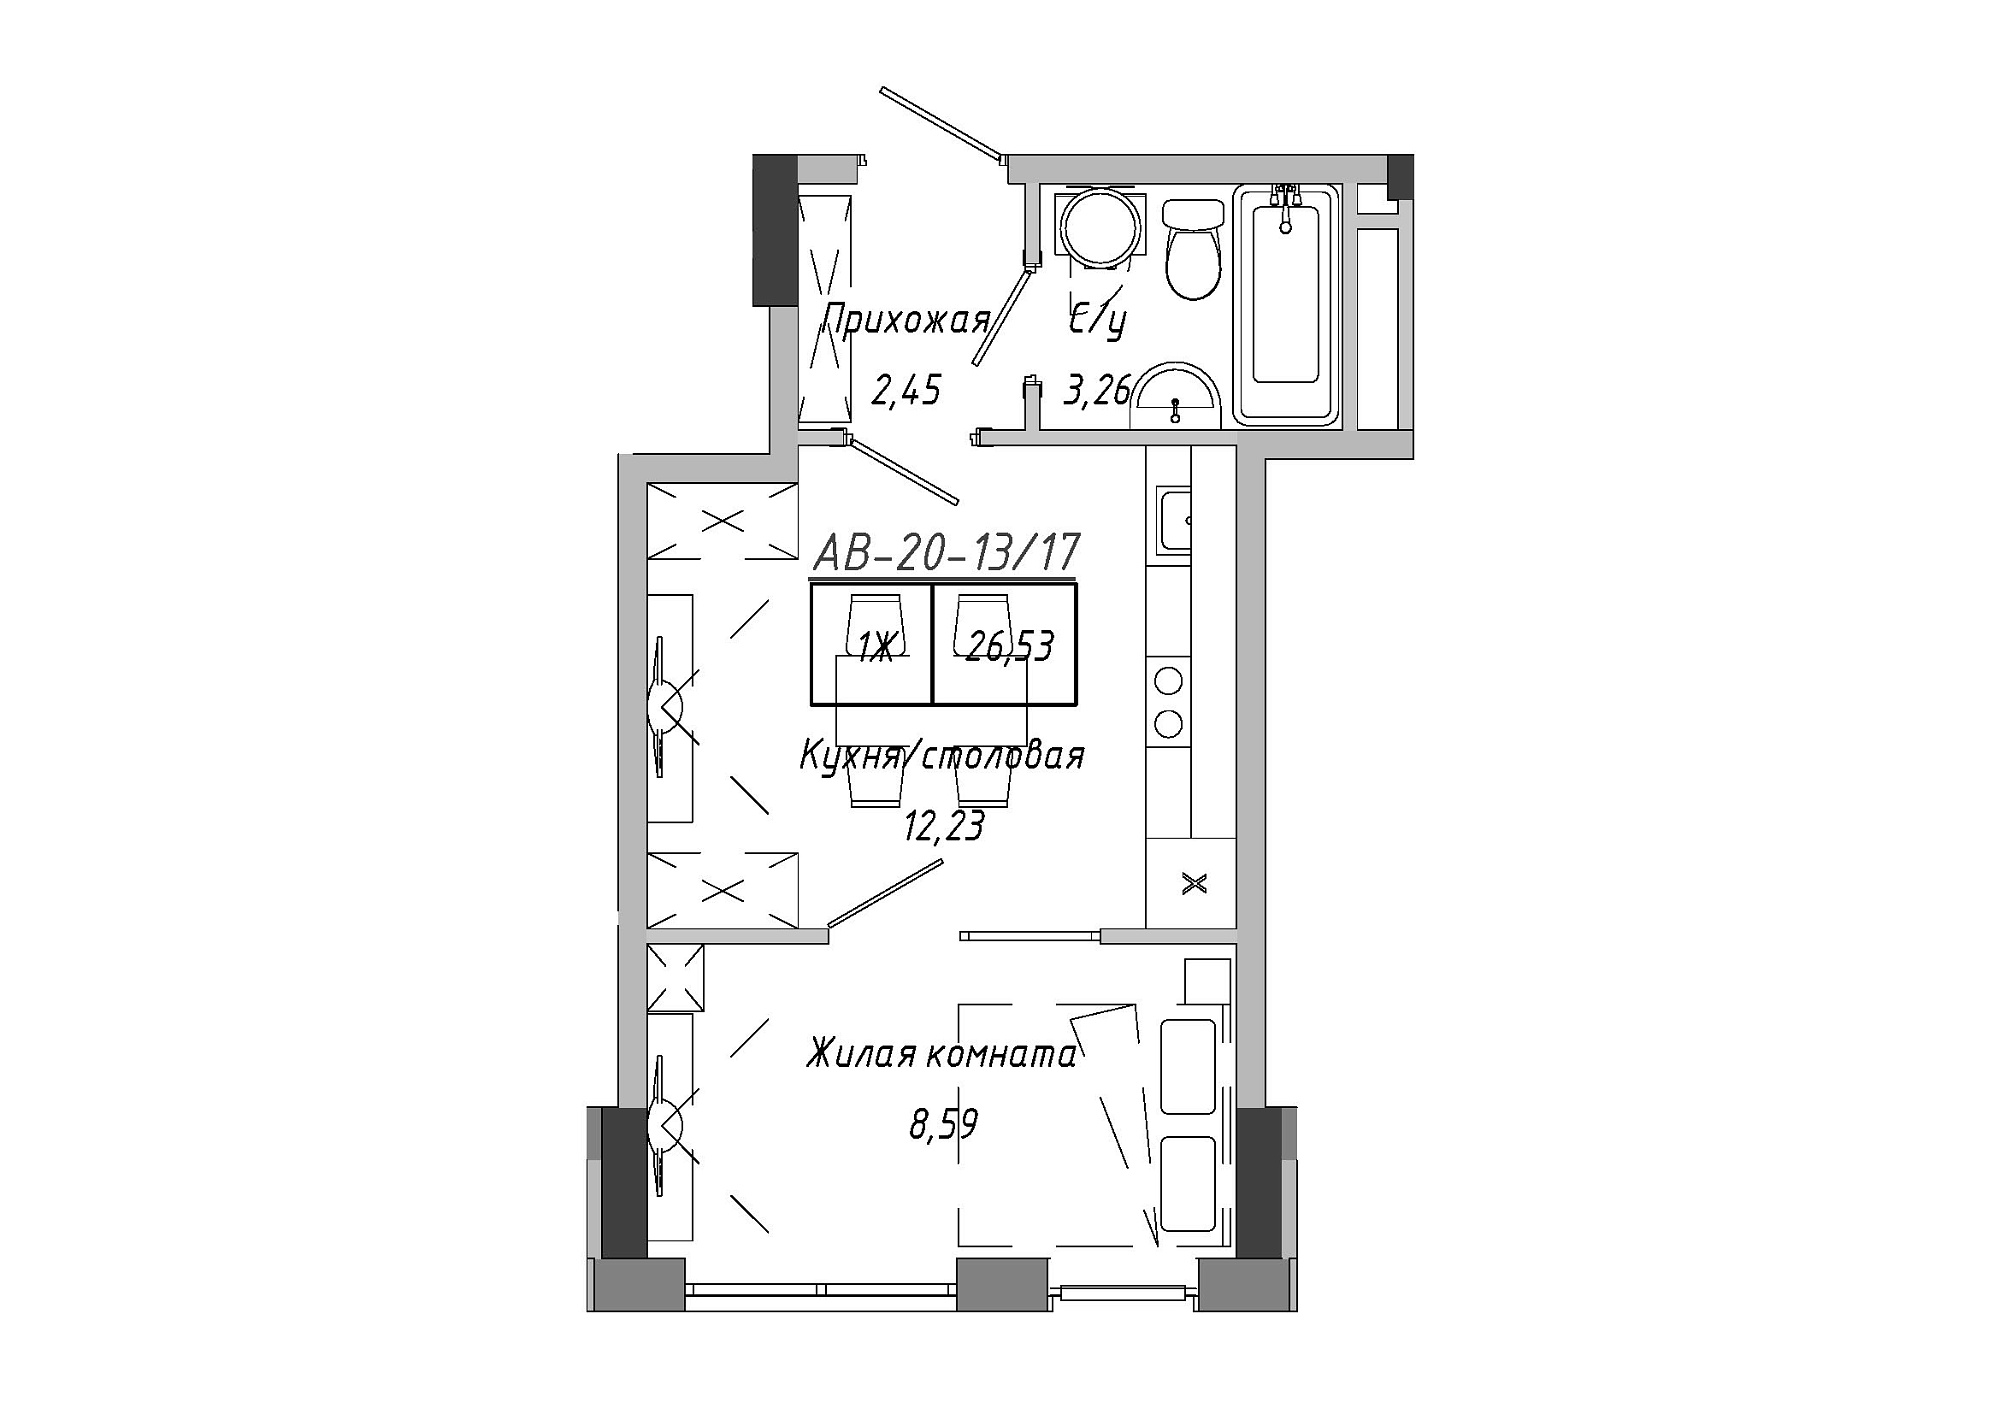 Планування 1-к квартира площею 26.53м2, AB-20-13/00117.